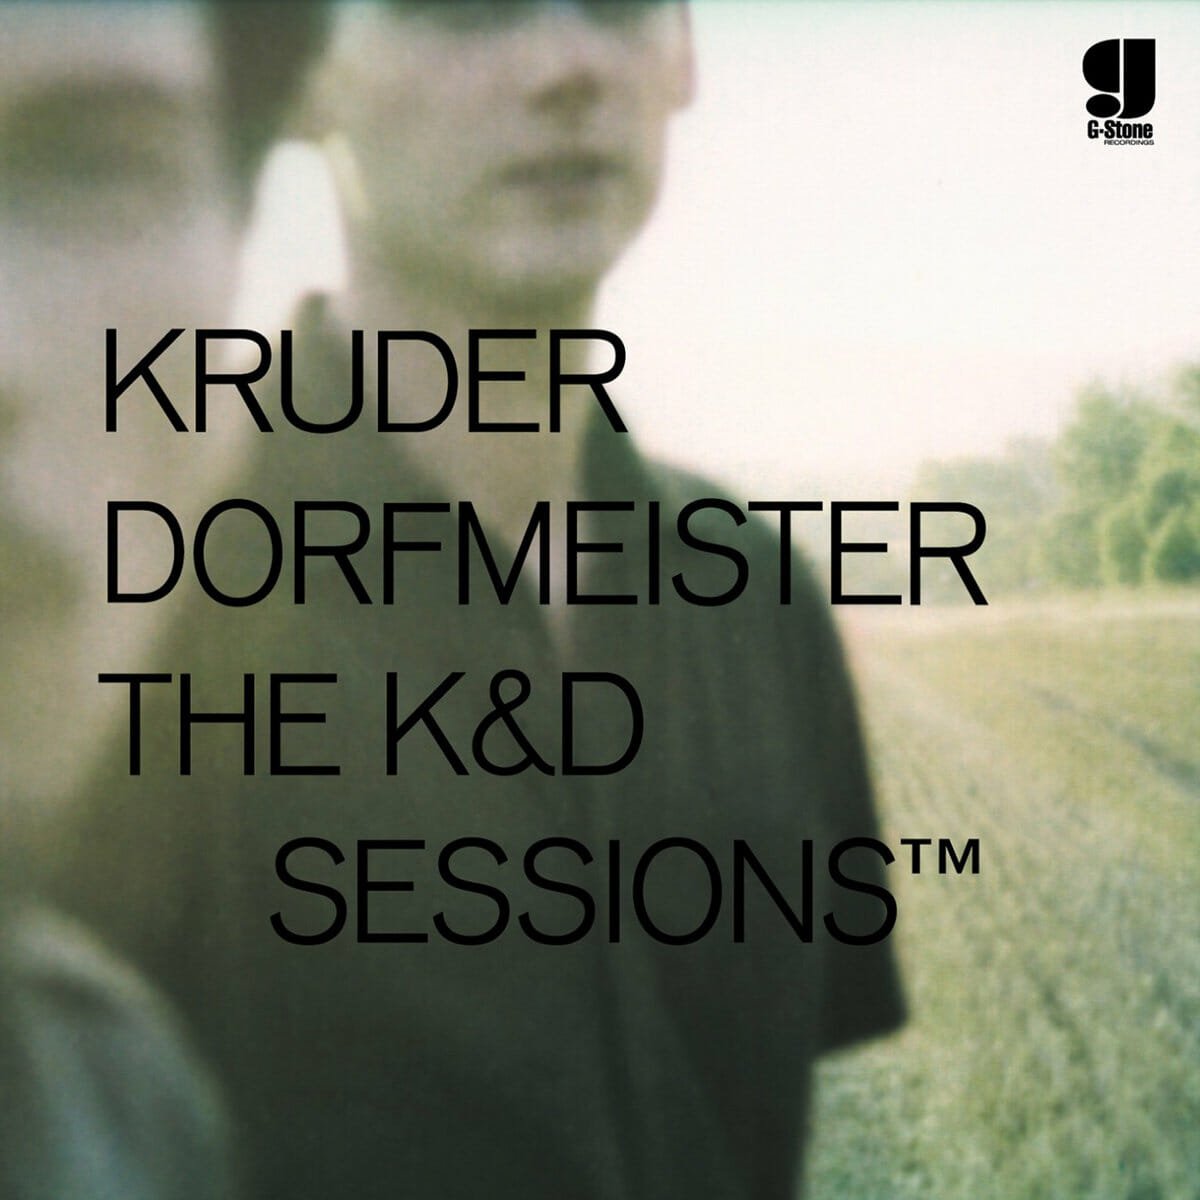 Kruder & Dorfmeister - "The K&D Sessions" Box Set